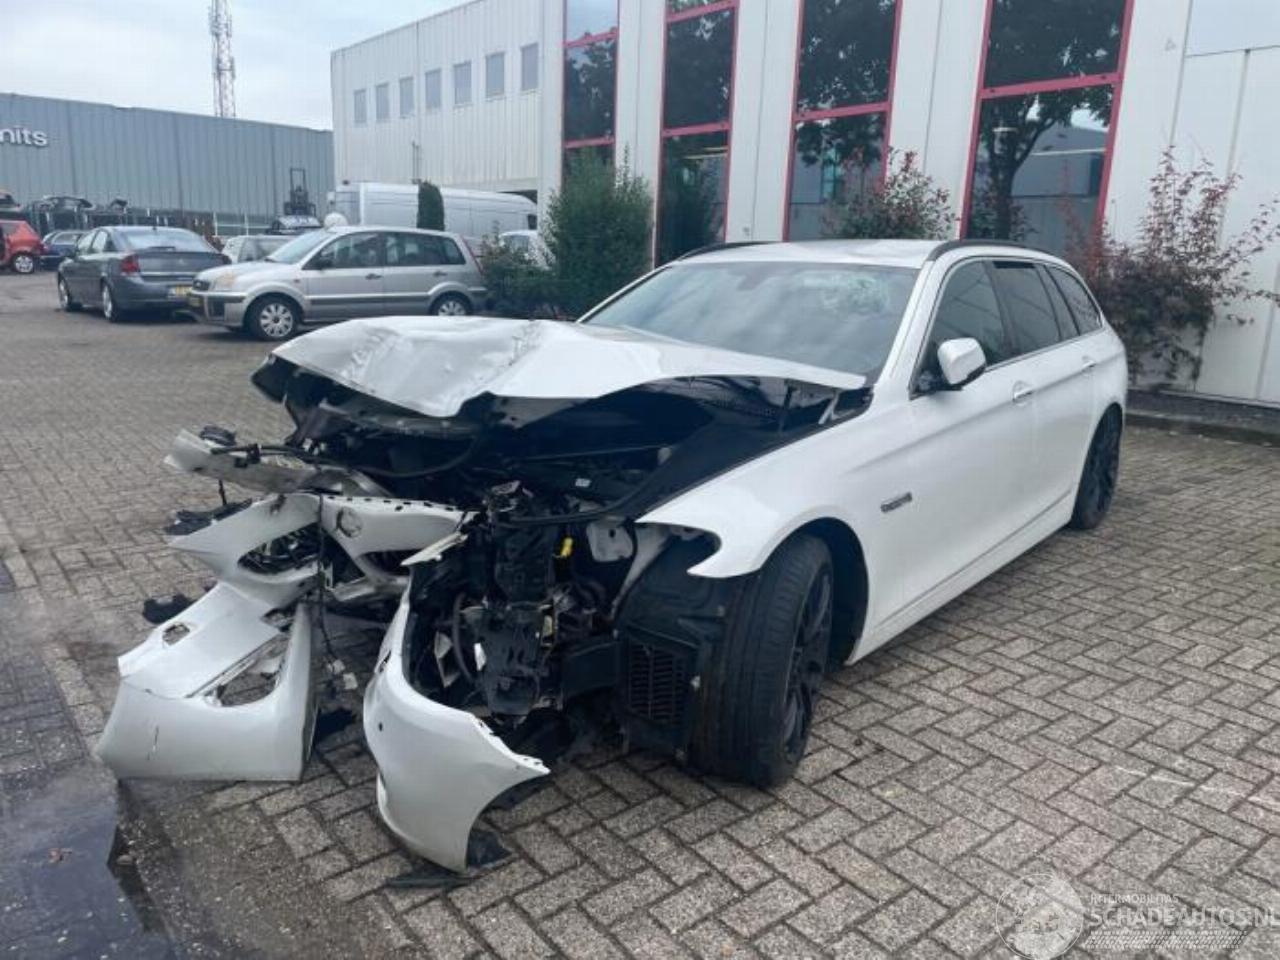 BMW 5-serie 